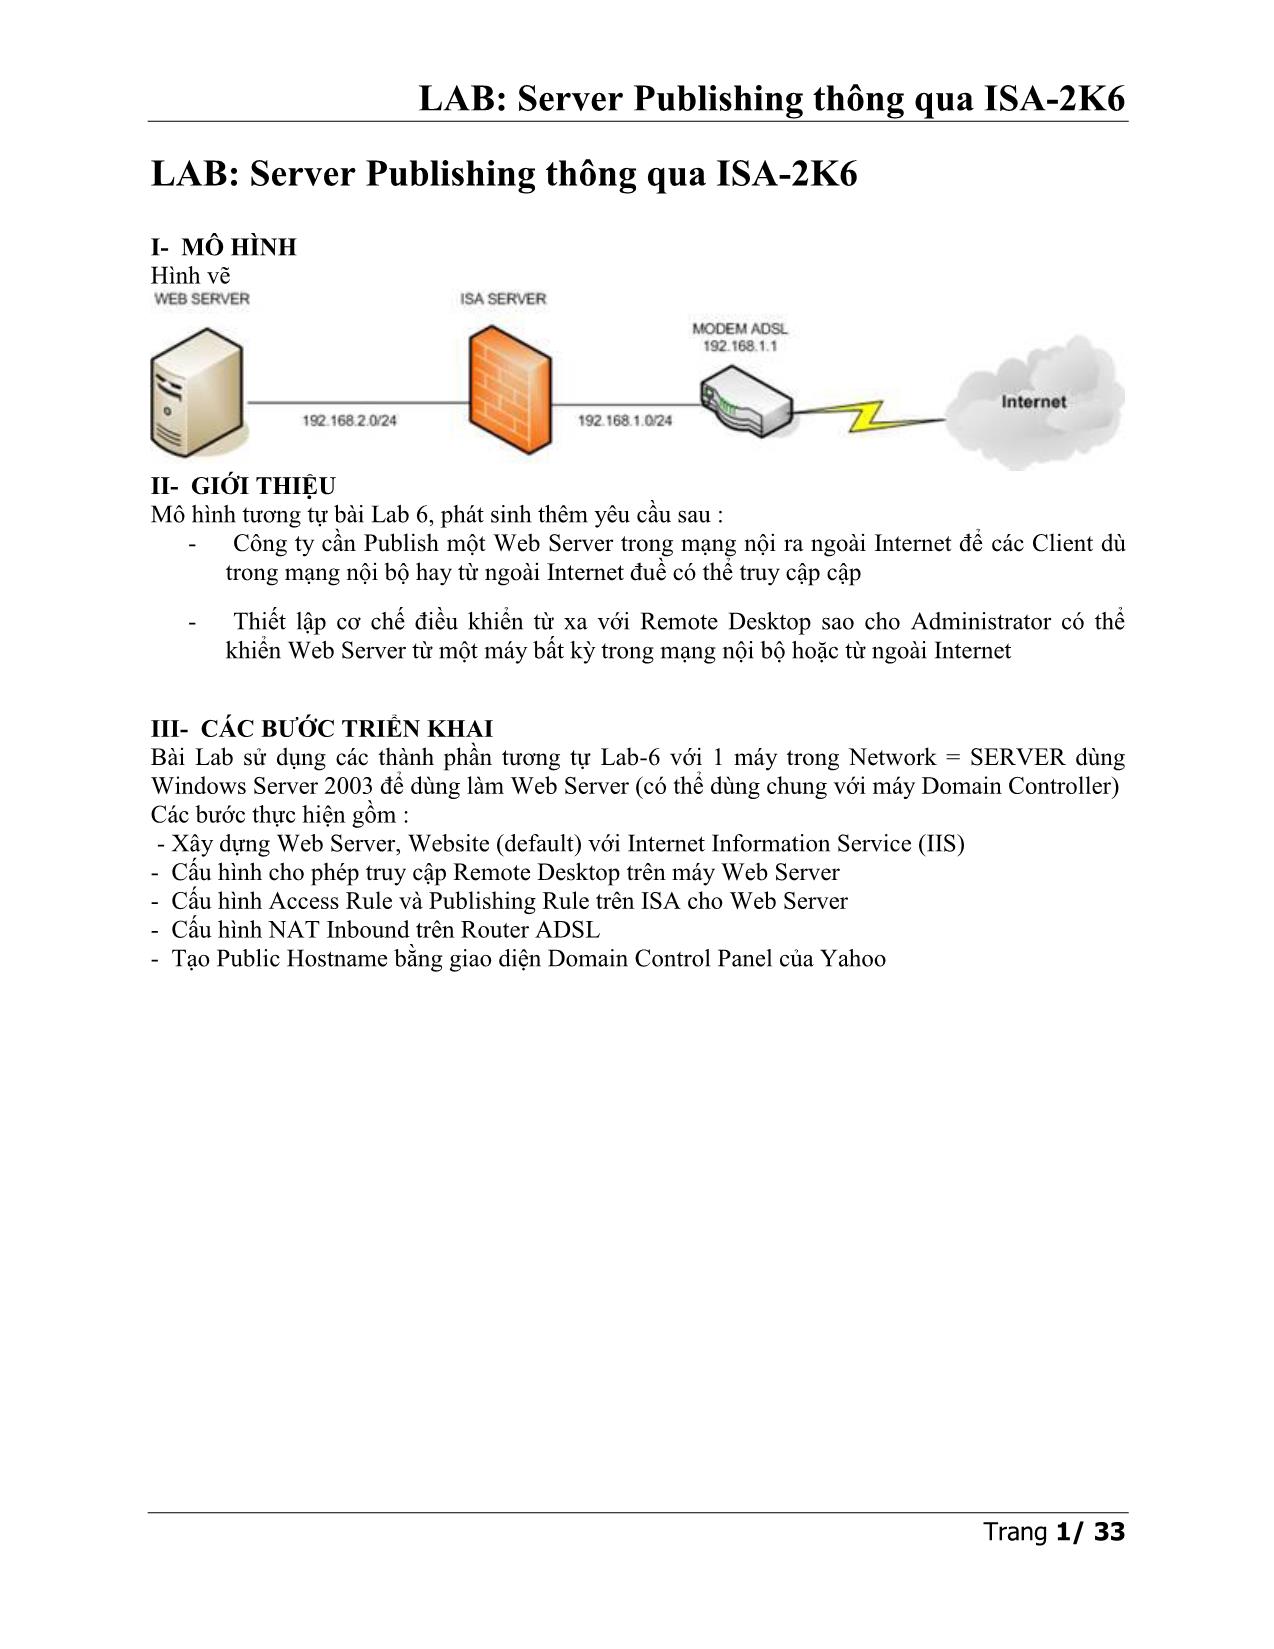 LAB: Server Publishing thông qua ISA-2K6 trang 1